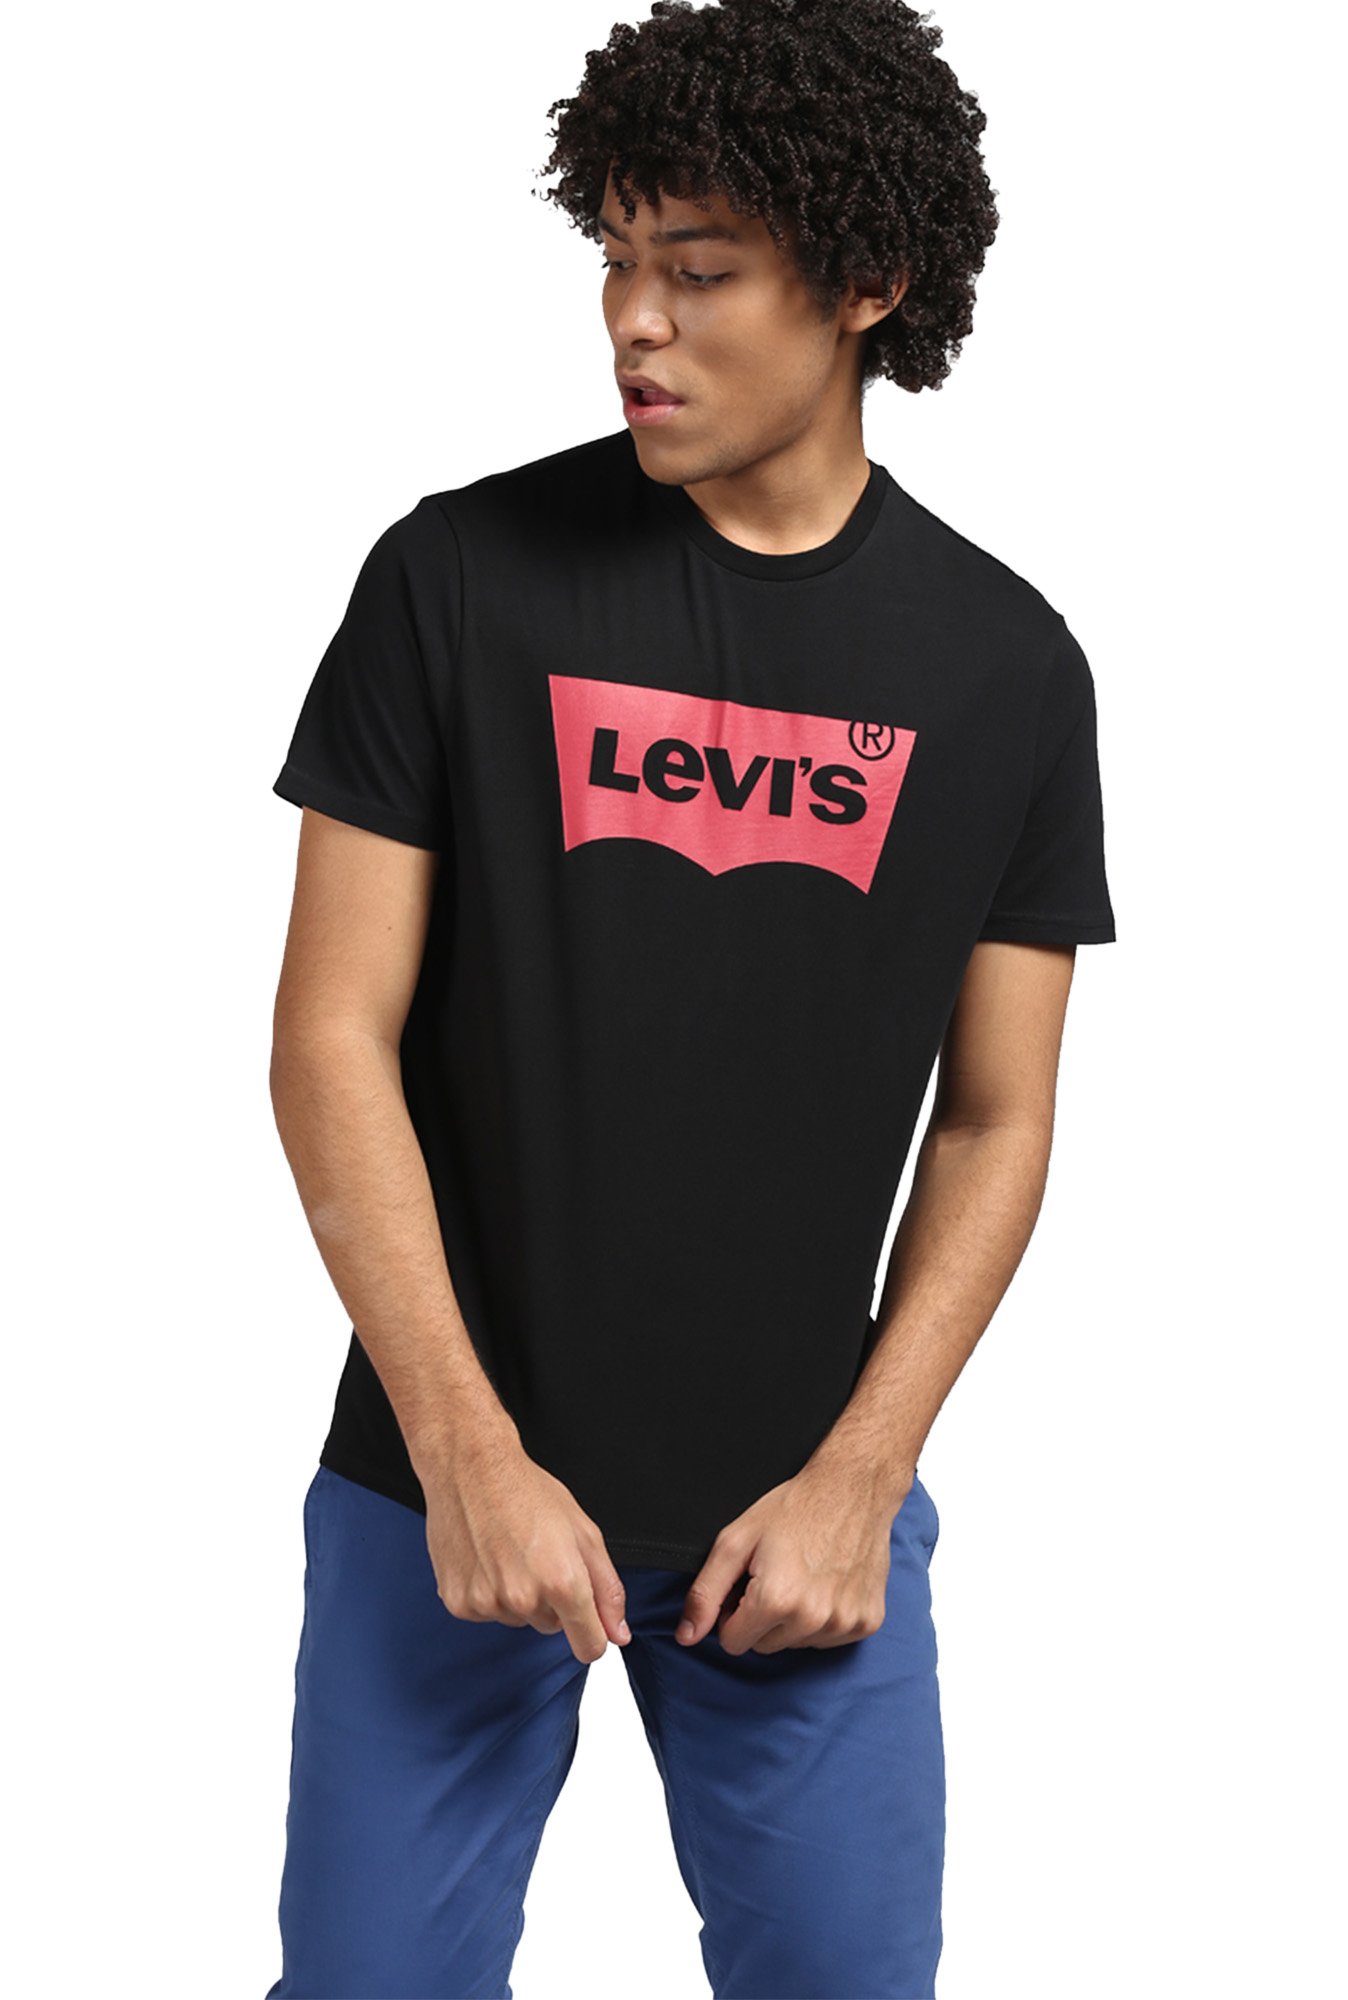 levis tshirt black